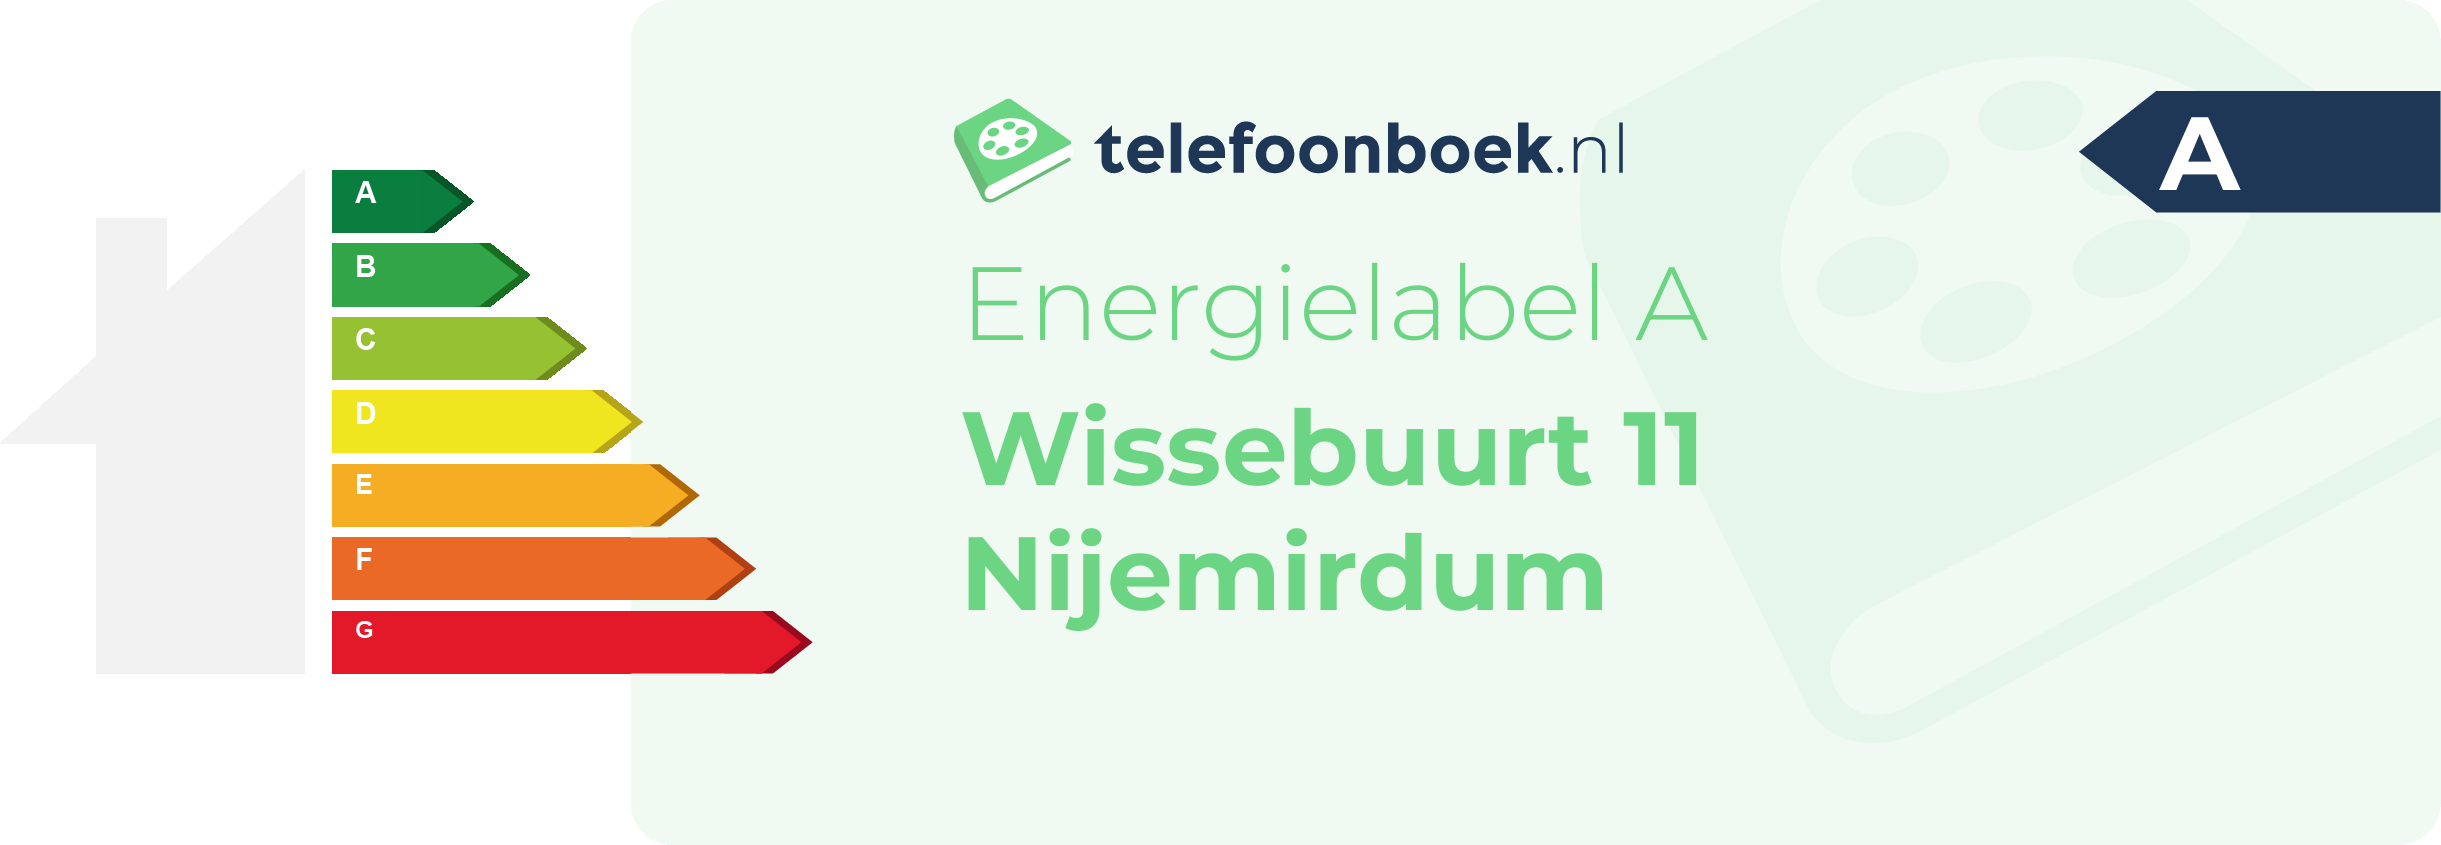 Energielabel Wissebuurt 11 Nijemirdum